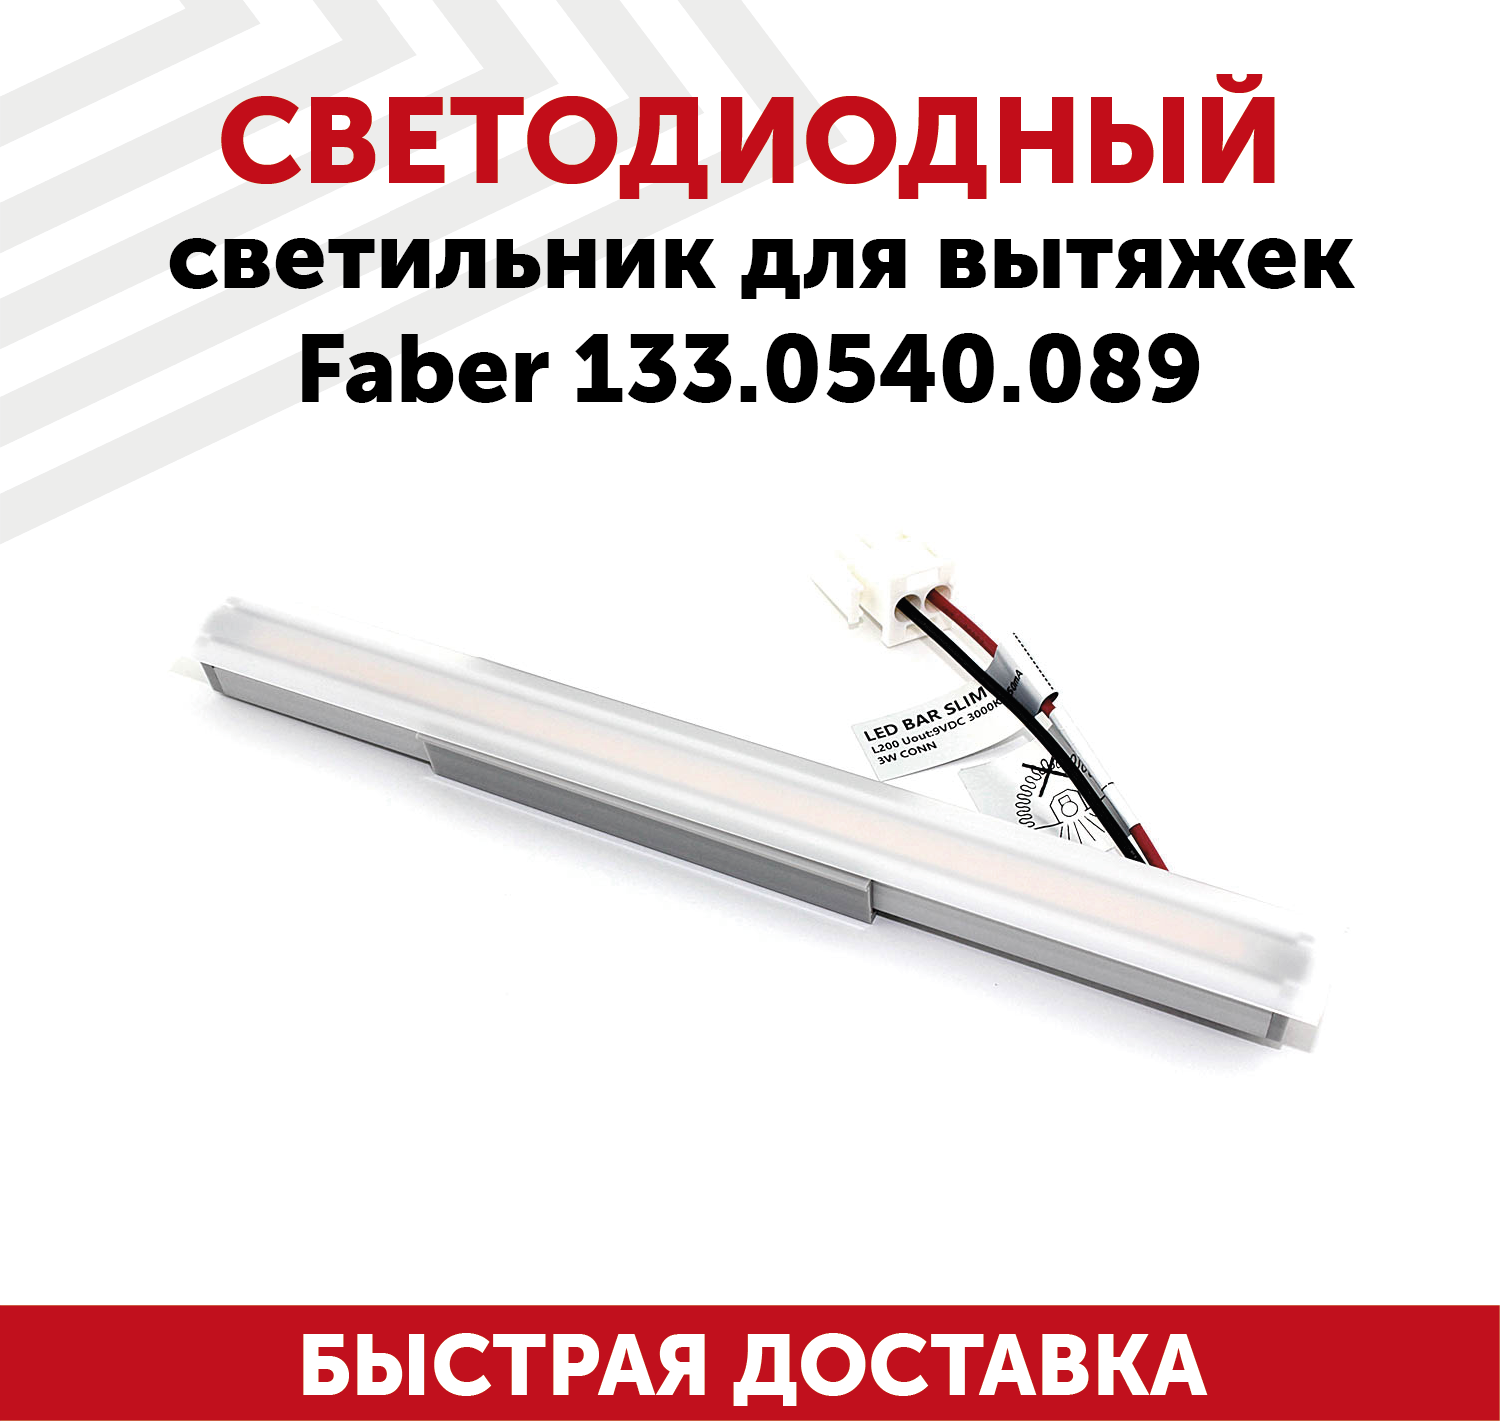 Светодиодный светильник для кухонных вытяжек Faber 133.0540.089